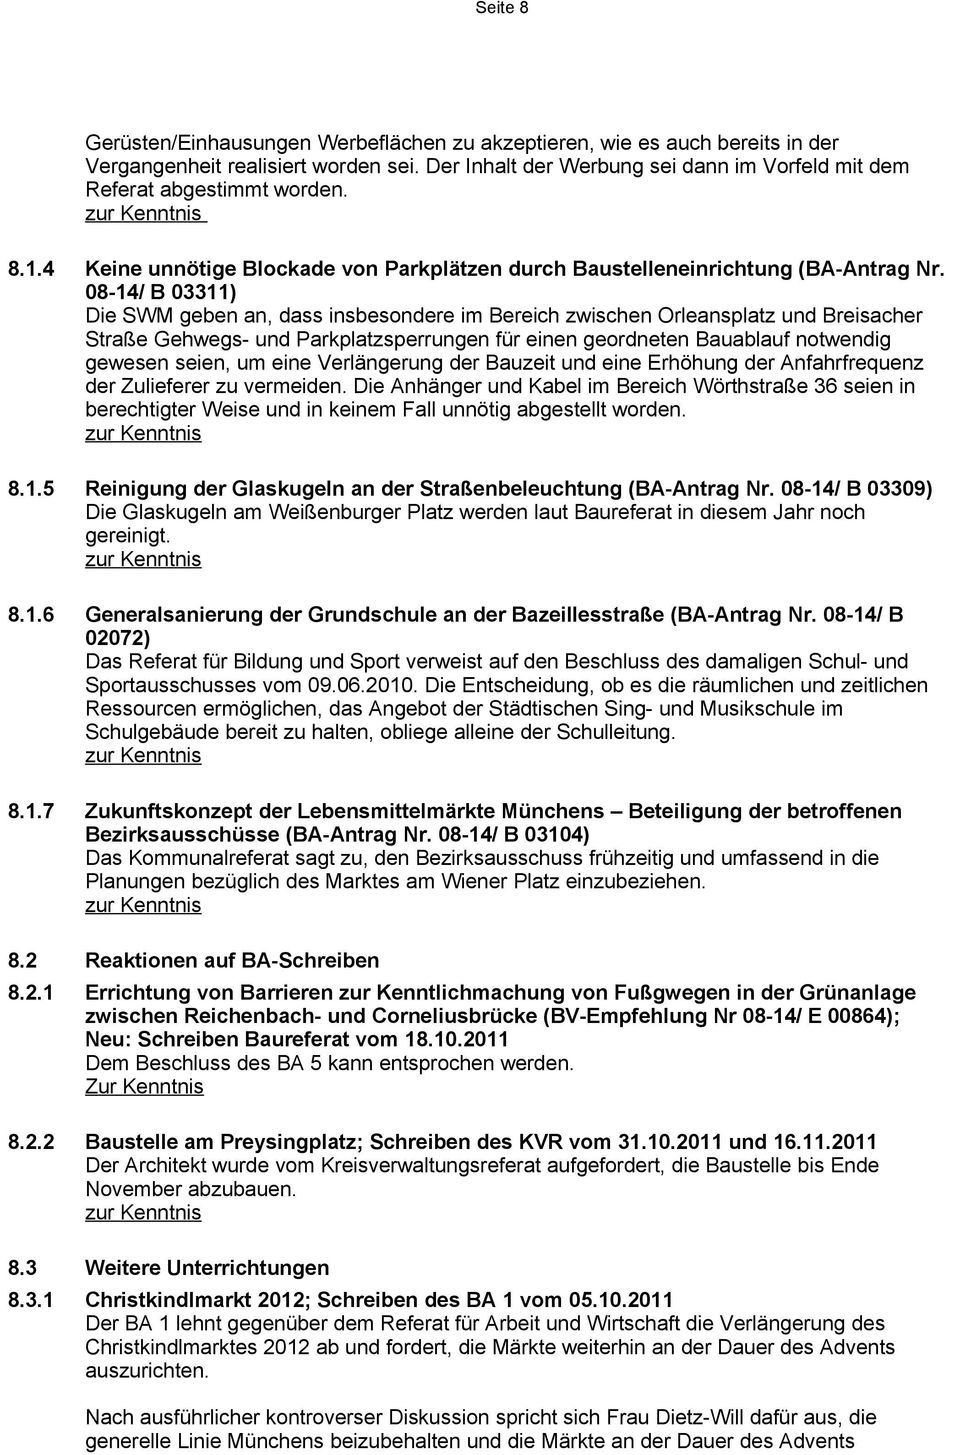 08-14/ B 03311) Die SWM geben an, dass insbesondere im Bereich zwischen Orleansplatz und Breisacher Straße Gehwegs- und Parkplatzsperrungen für einen geordneten Bauablauf notwendig gewesen seien, um